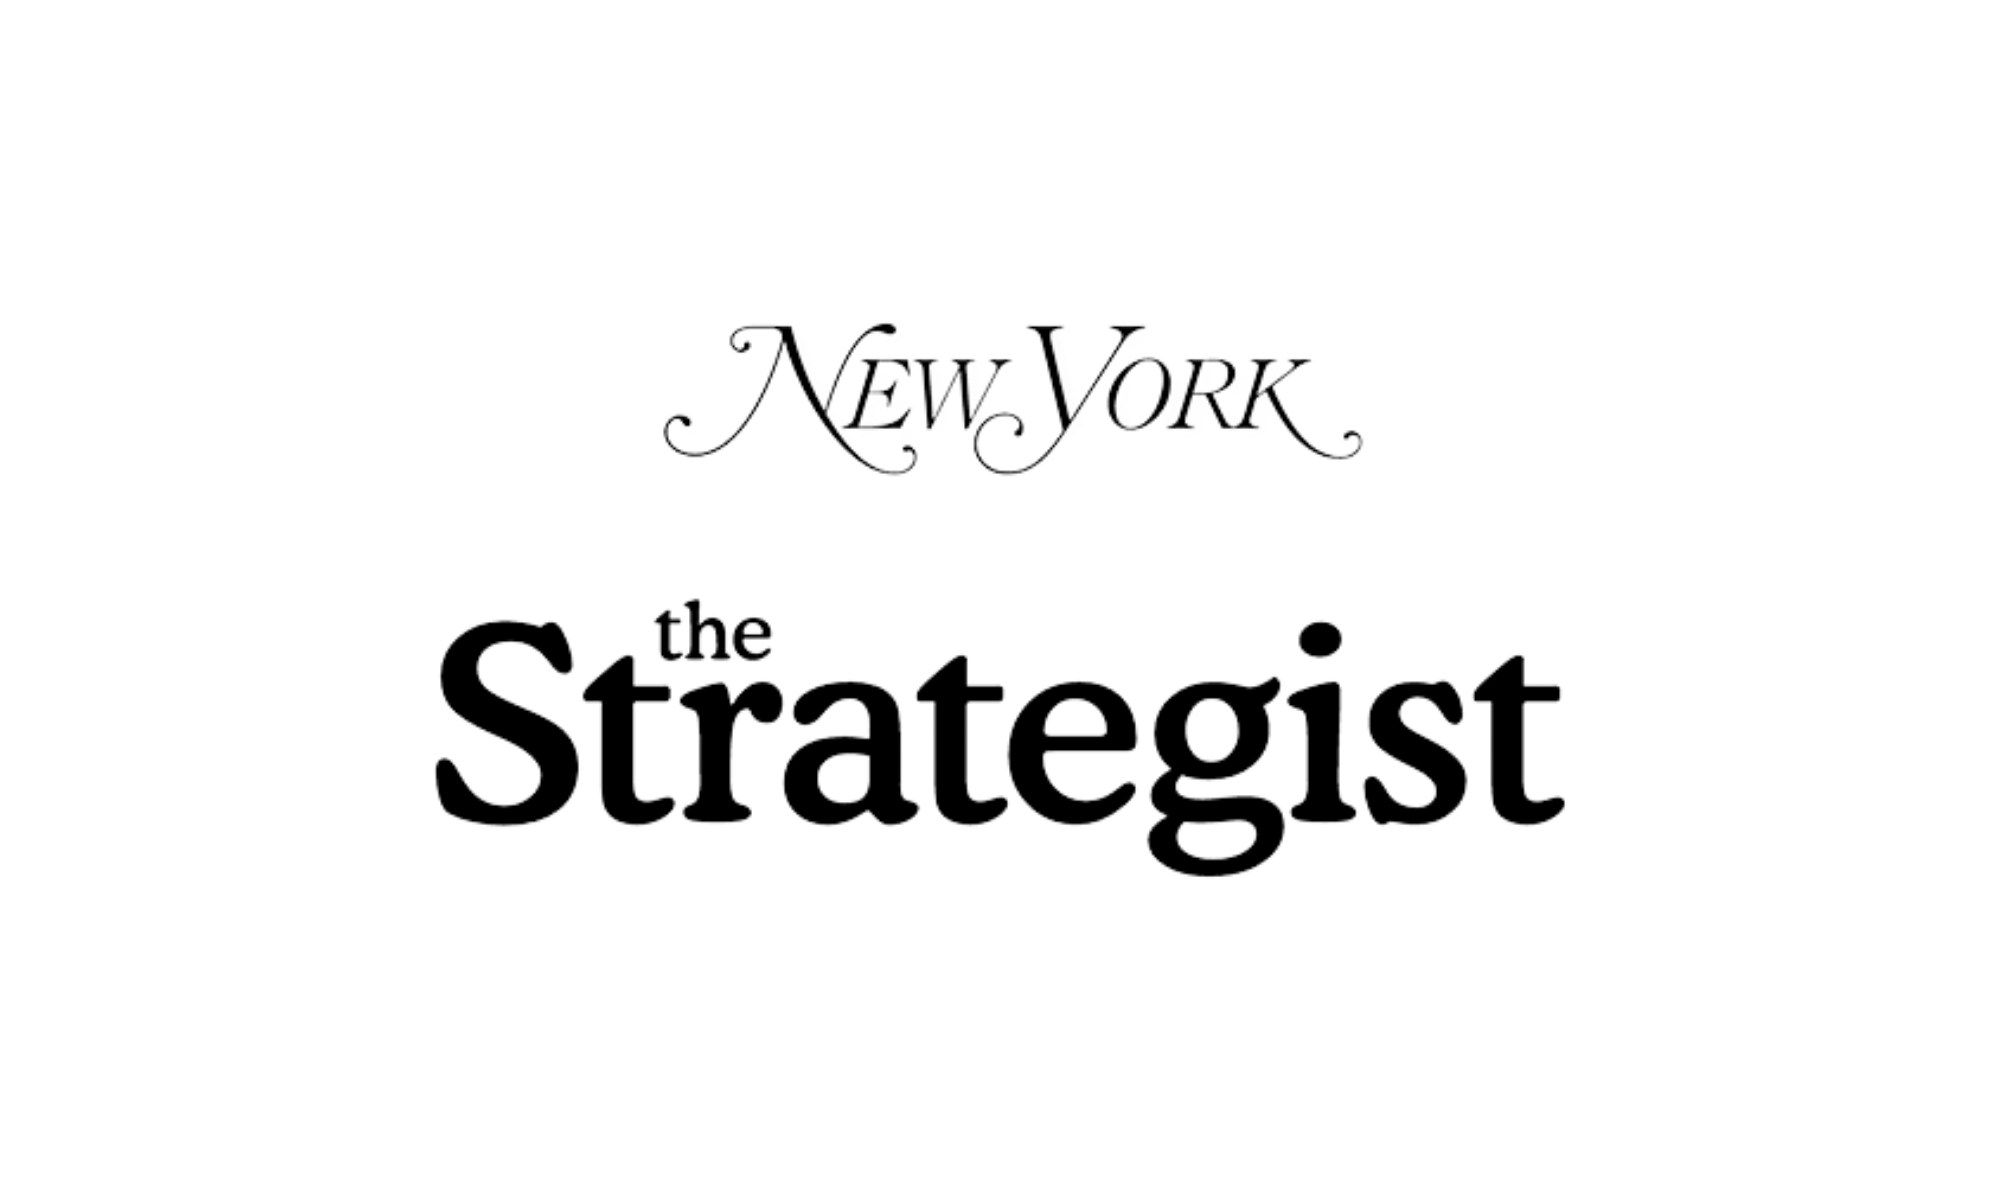 New York Magazine: The Strategist